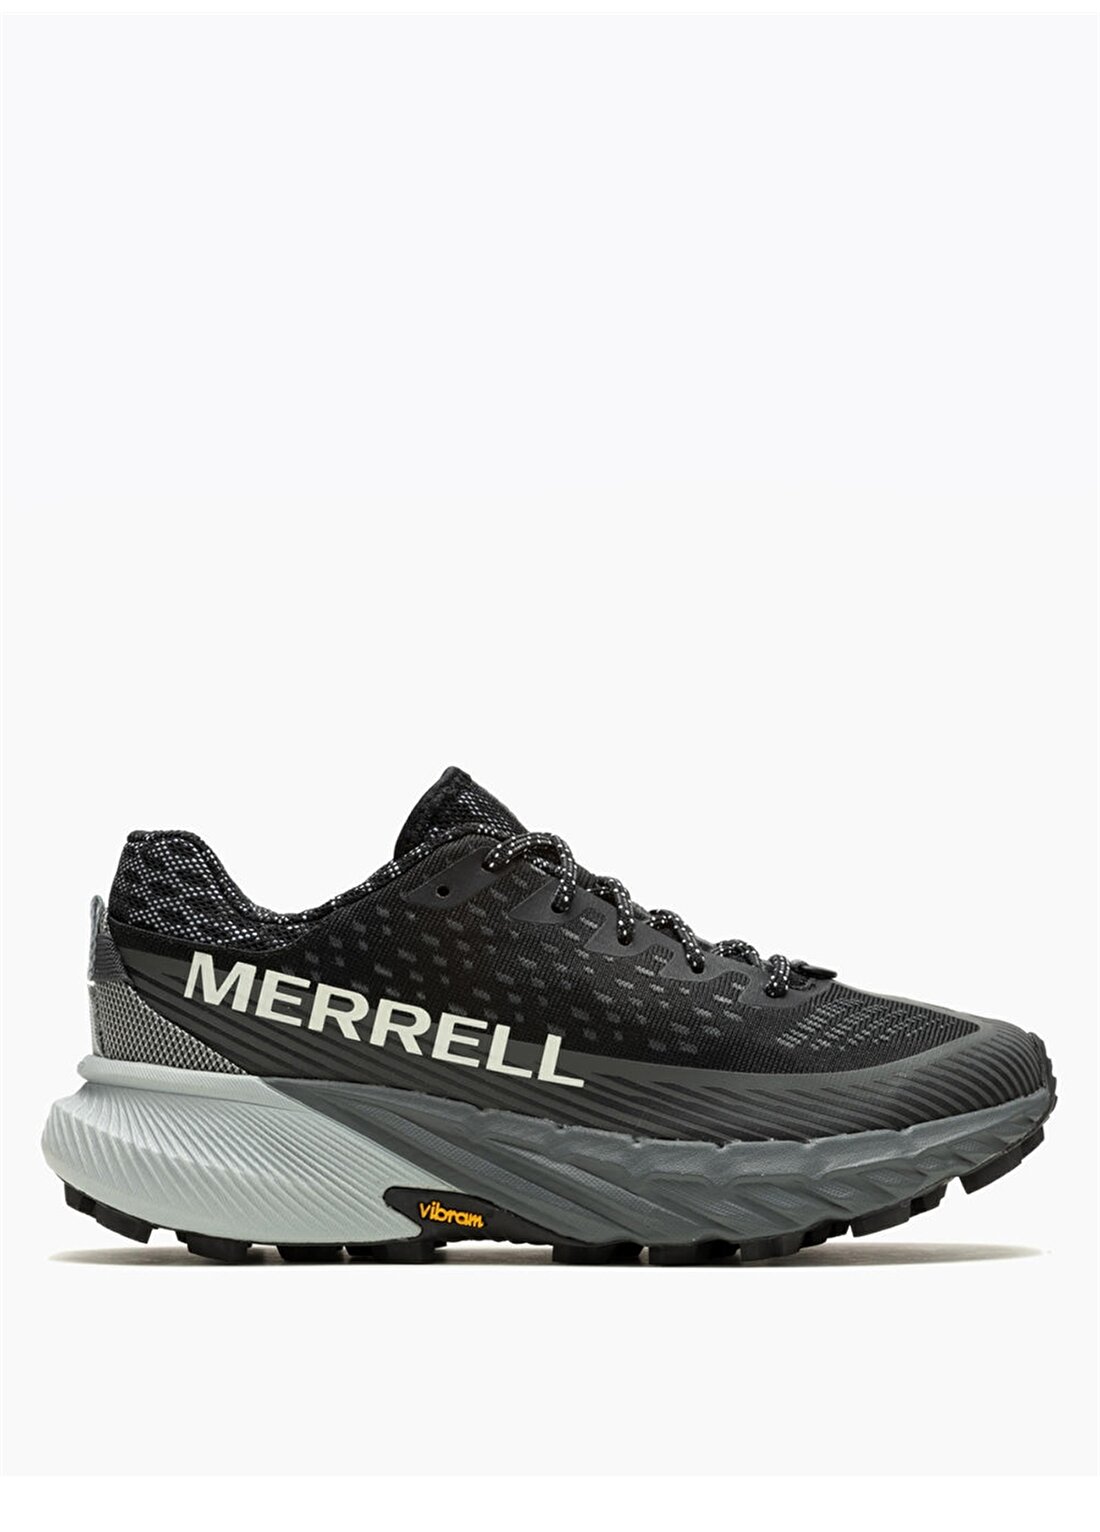 Merrell Siyah Kadın Koşu Ayakkabısı J067808agility Peak 5